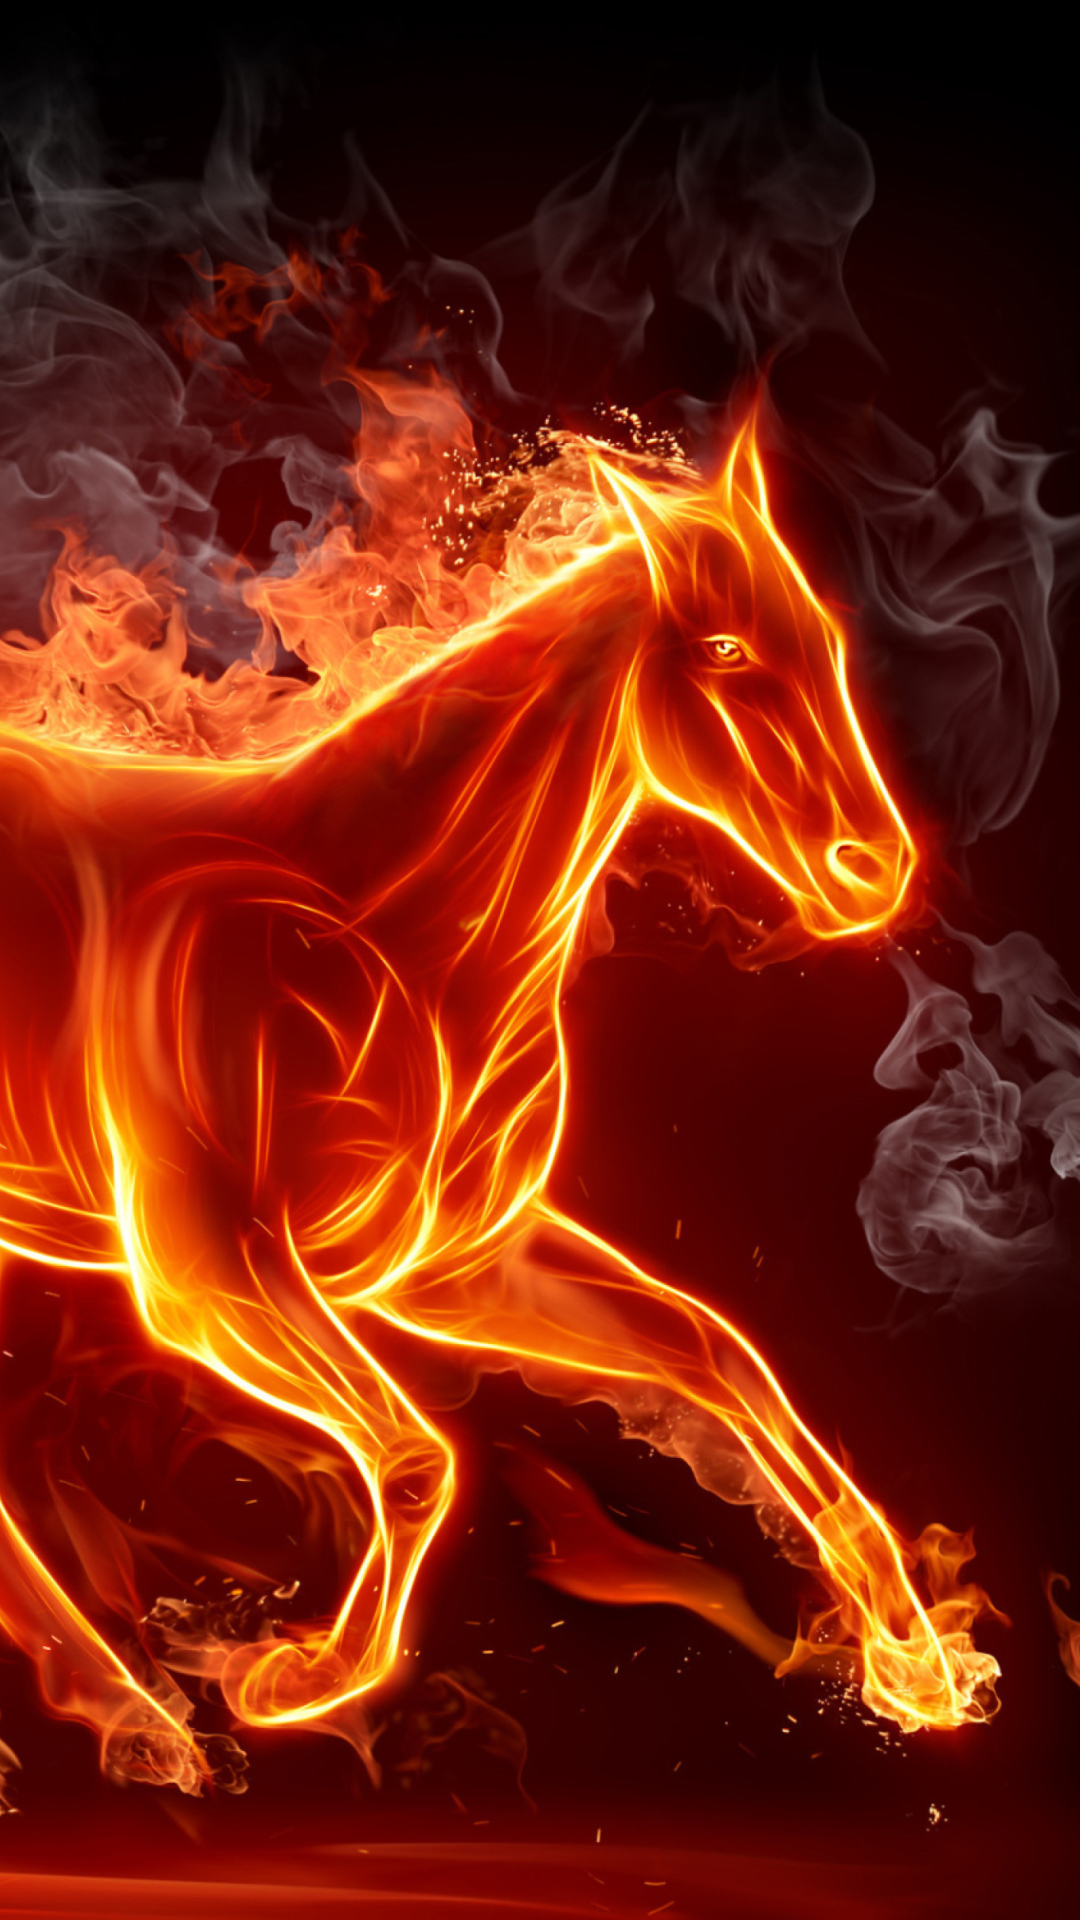 Das Fire Horse Wallpaper 1080x1920